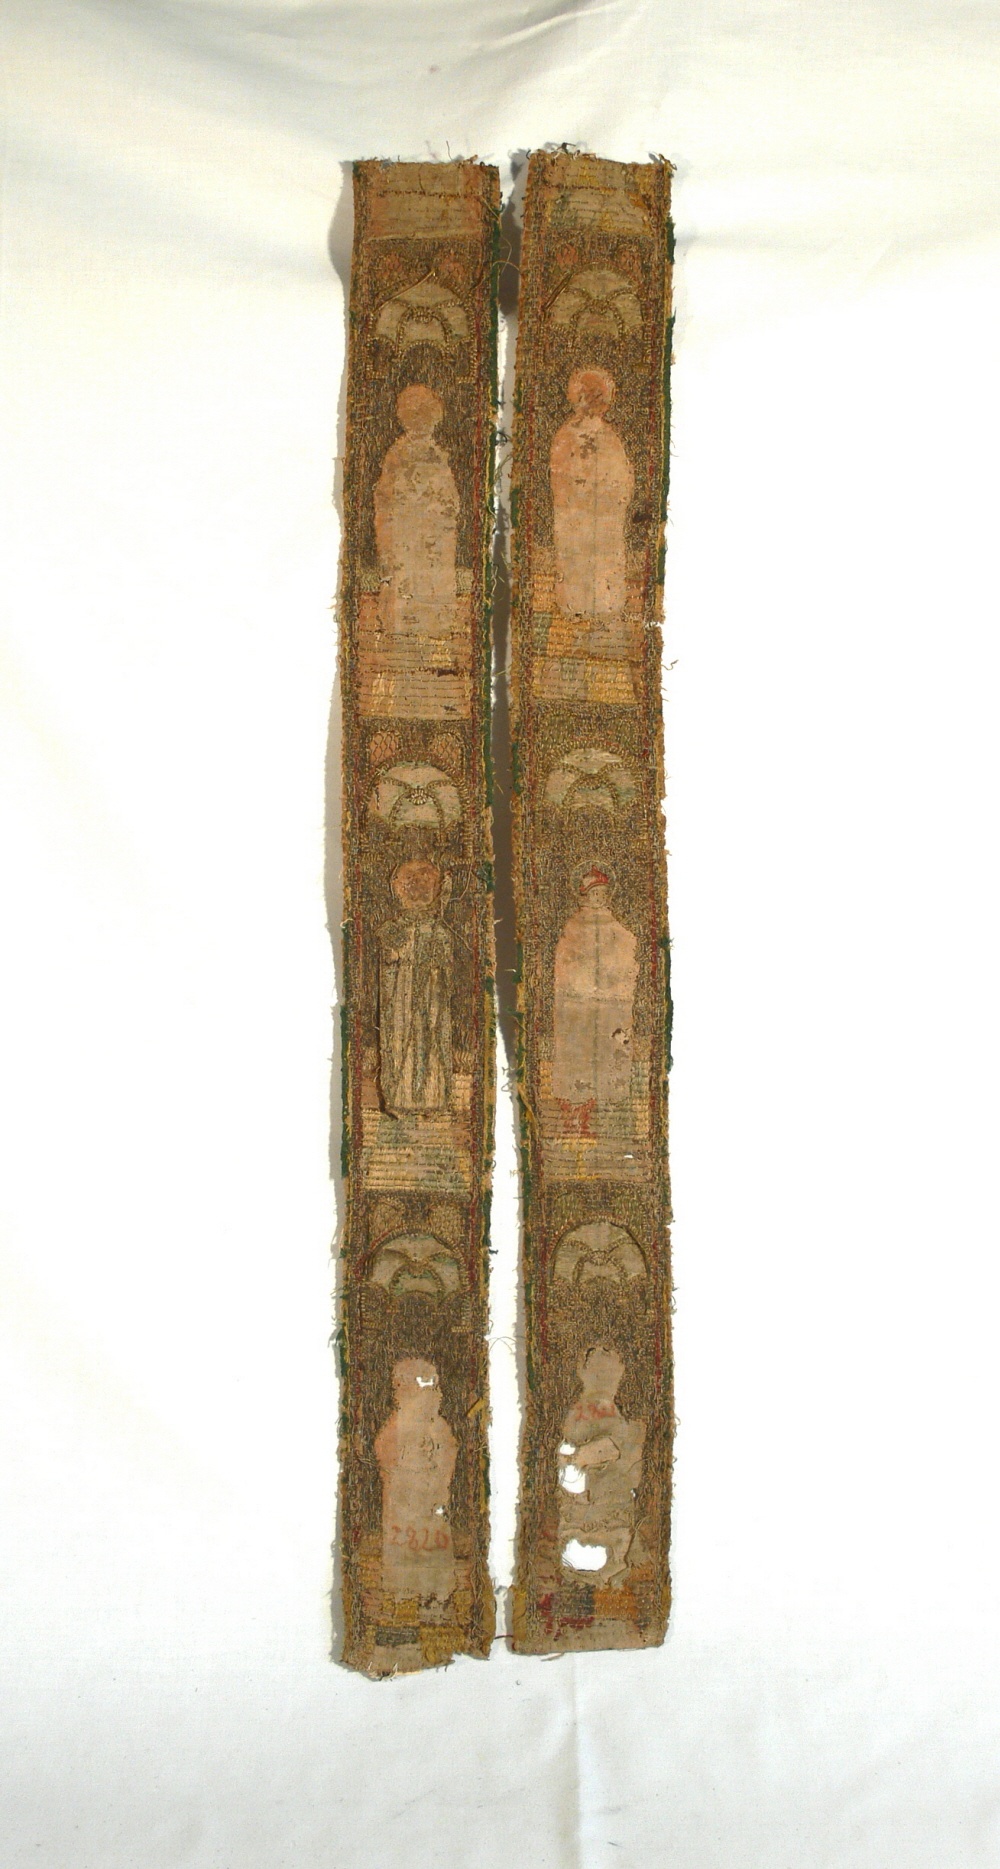 2 Teile einer Stola oder Besatz eines Pluviales (Städtische Museen Tangermünde CC BY-NC-SA)